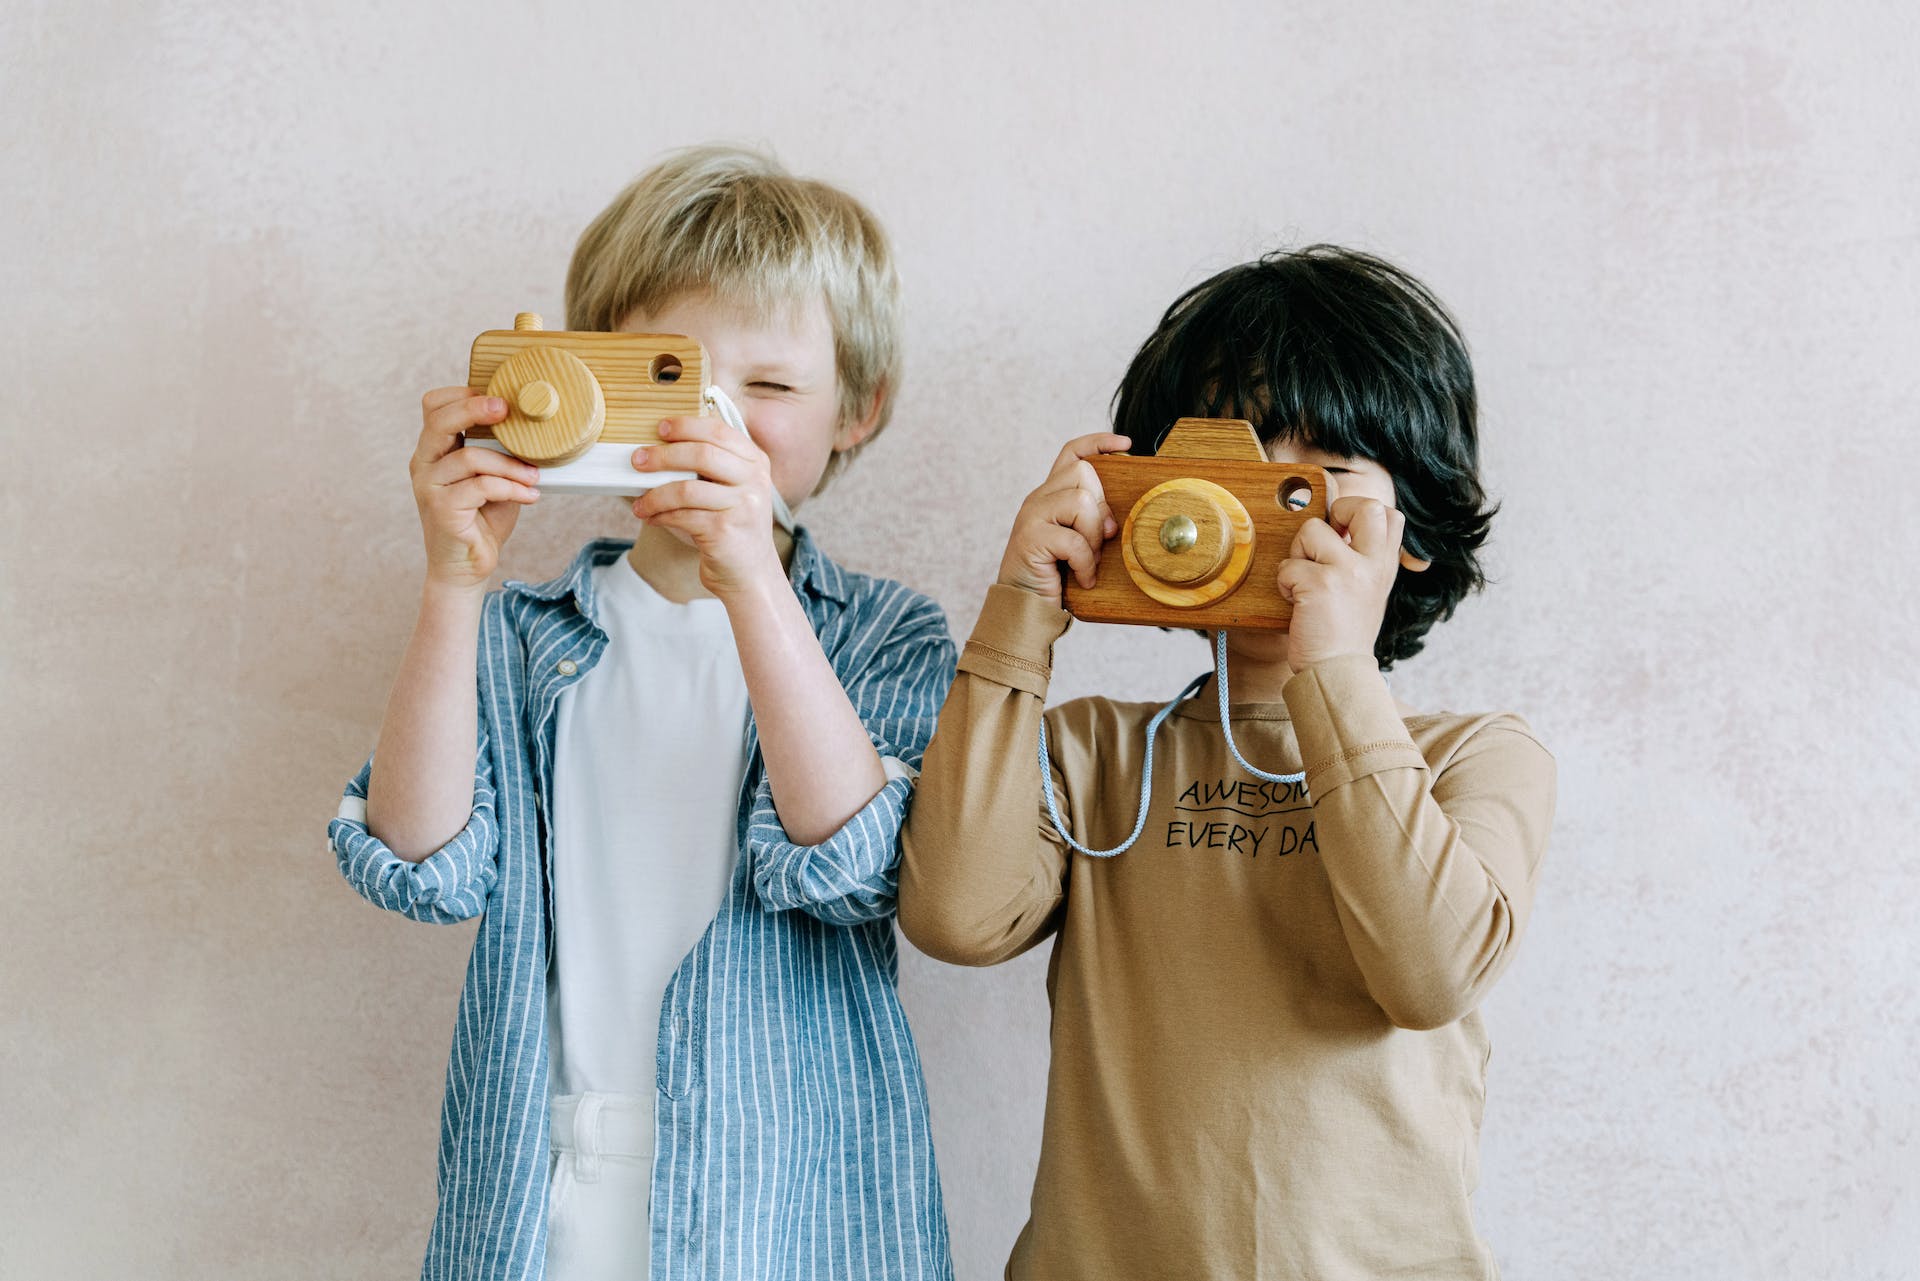 Deux garçons jouant avec un appareil photo jouet | Source : Pexels